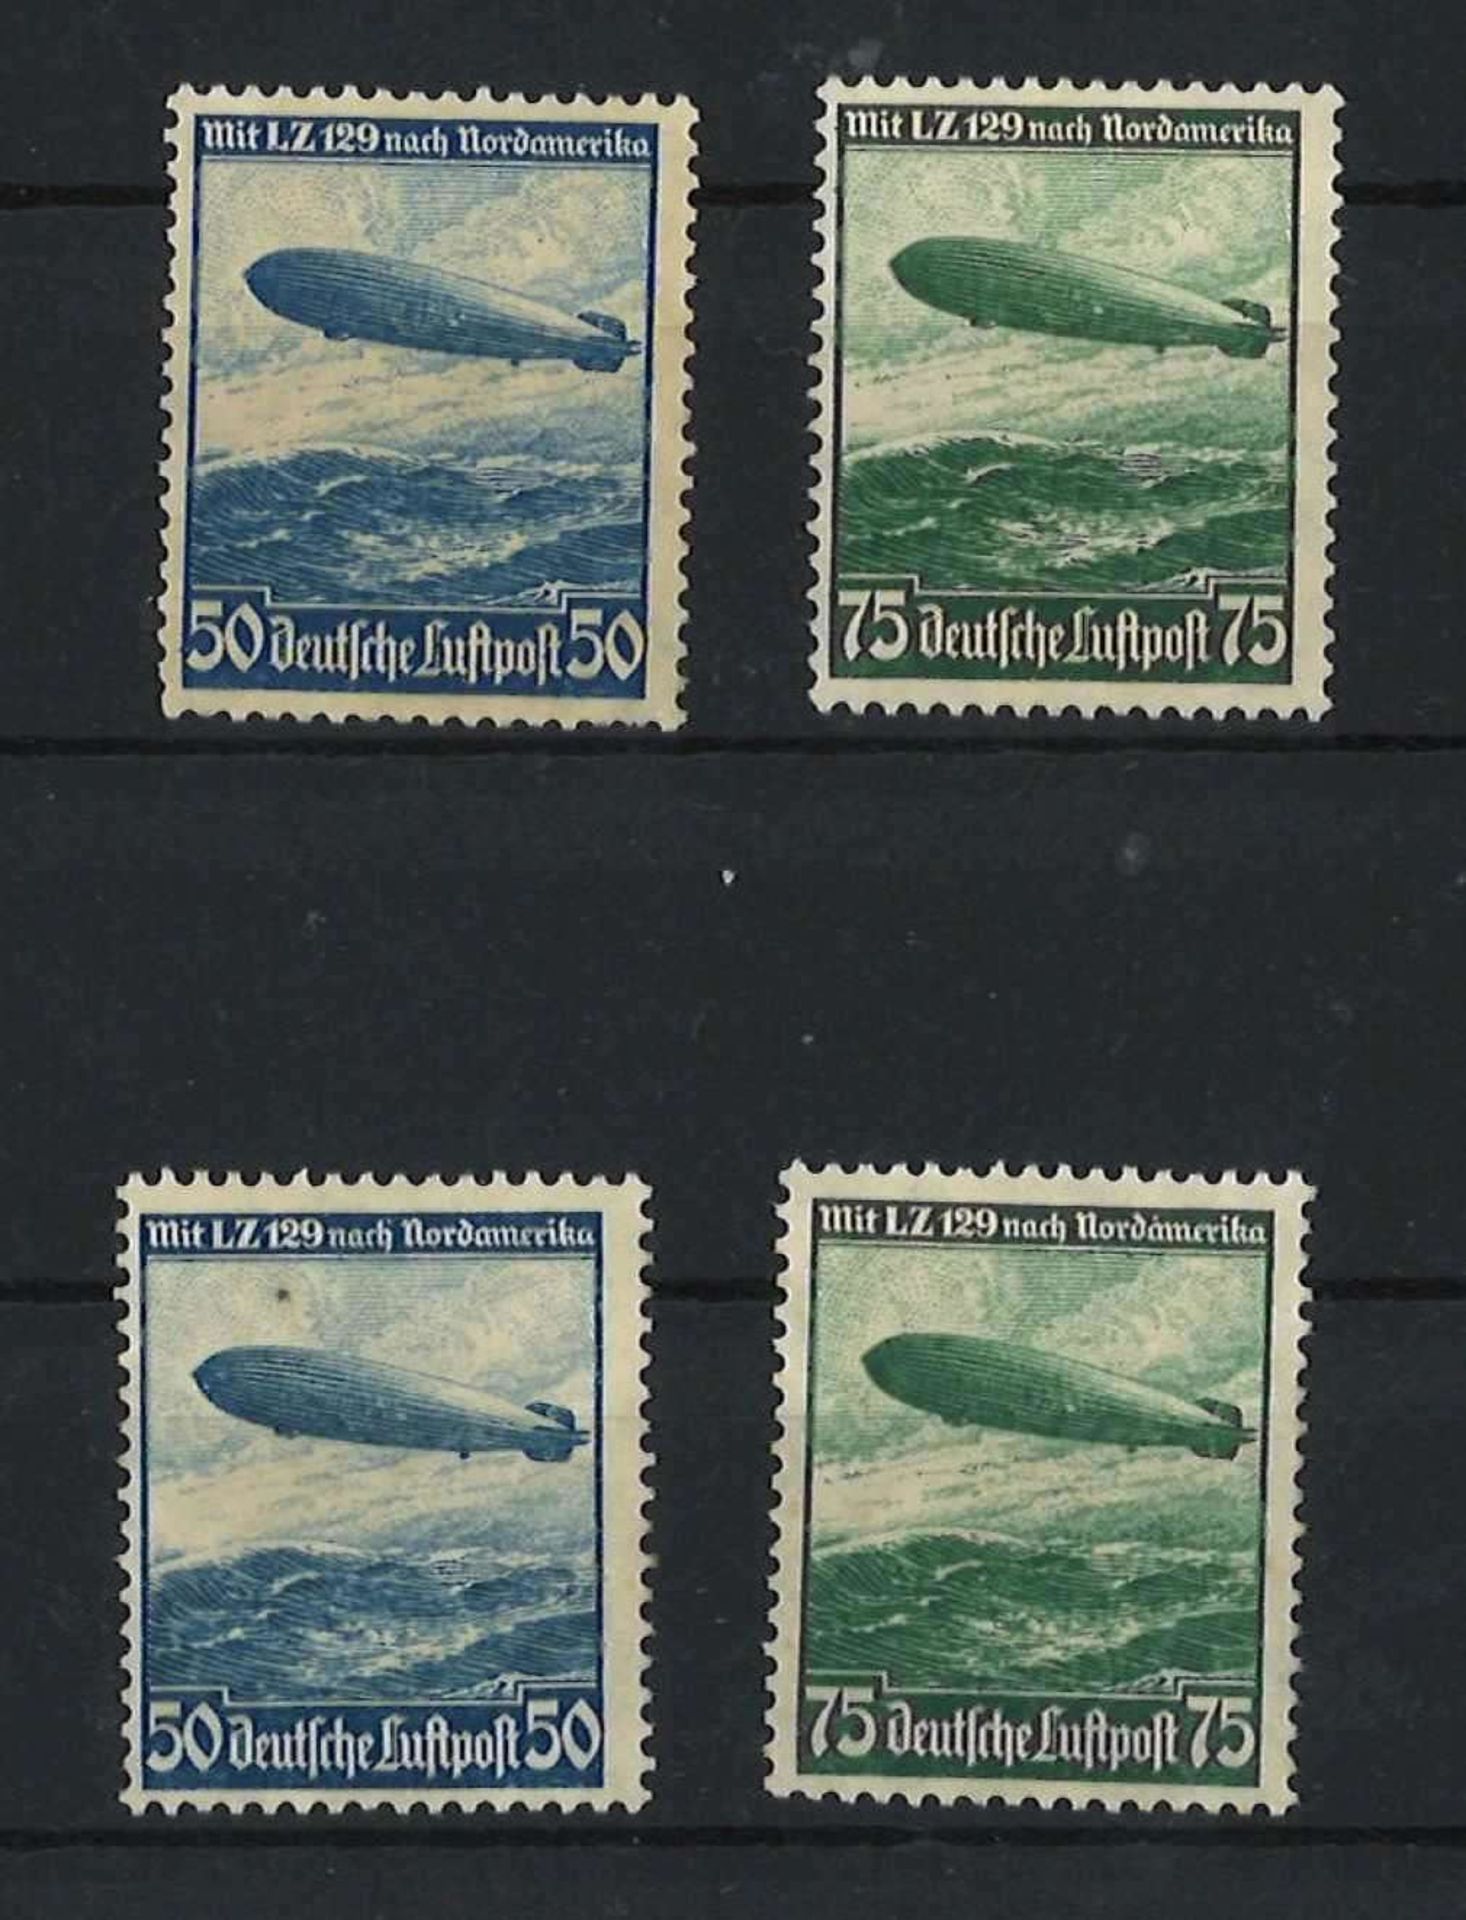 Deutsches Reich 1936, MI 606 + 607y, 606 + 607x, Flugpostmarken, ungebrauchtGerman Reich 1936, MI